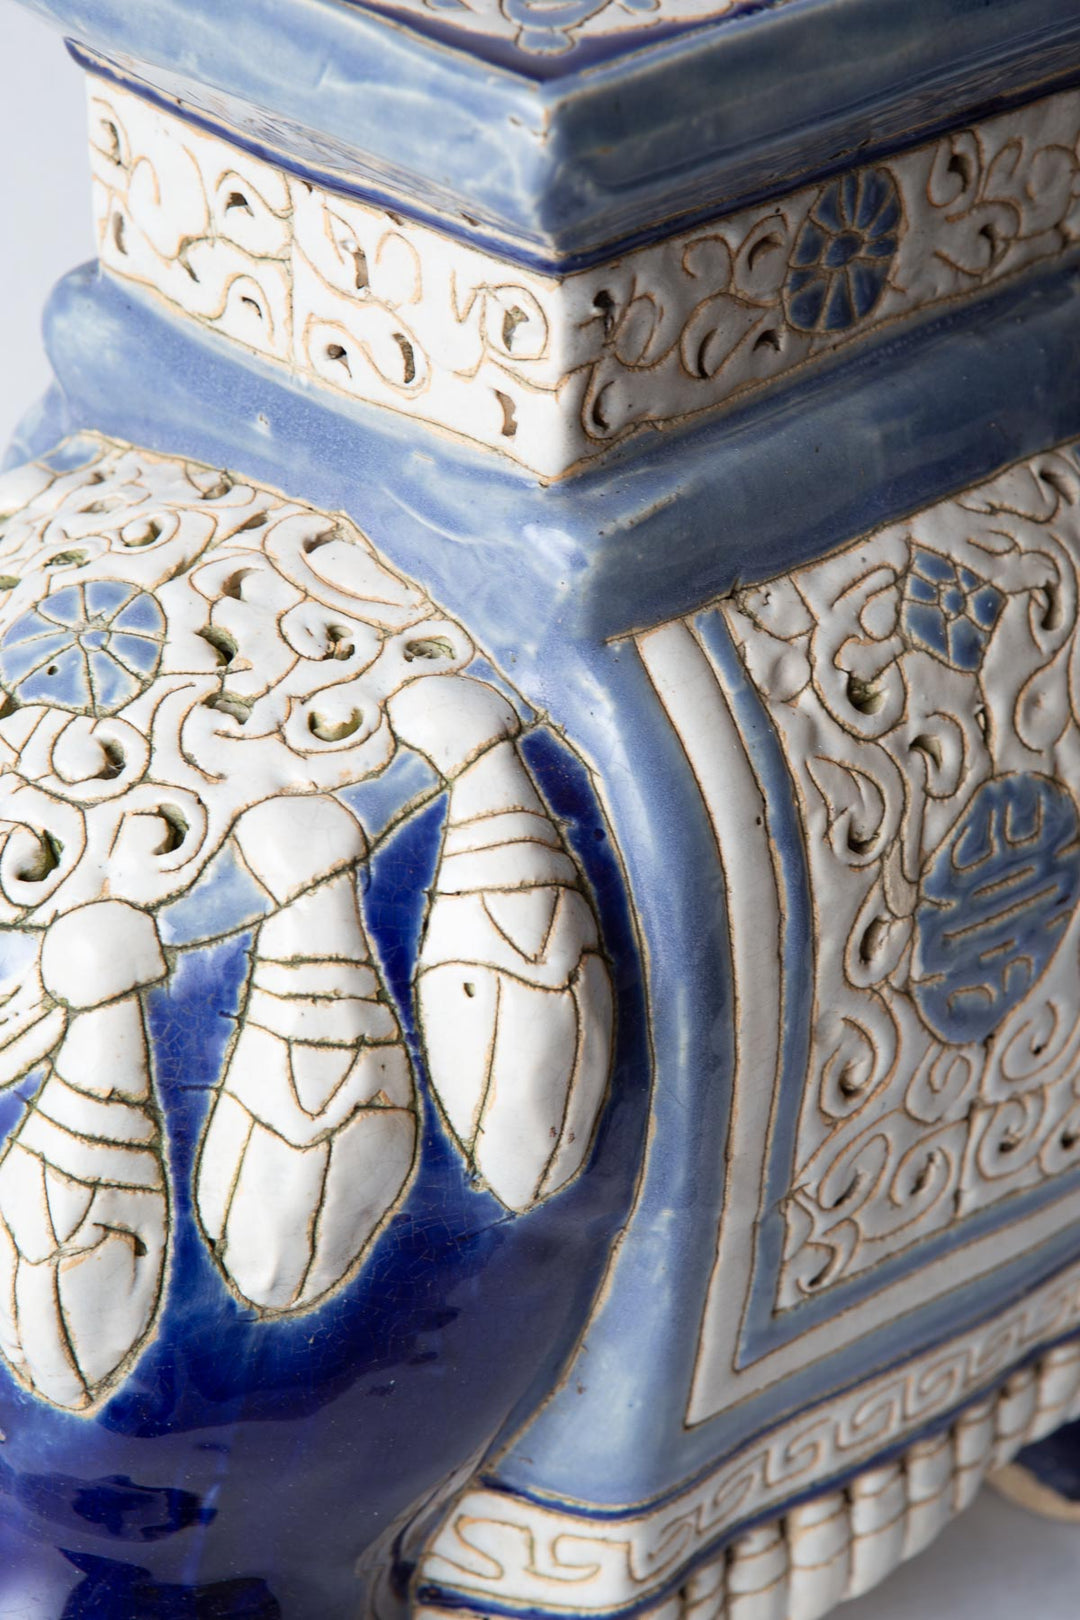 Figura de elefante cerámica esmaltada azul y blanco (VENDIDA)